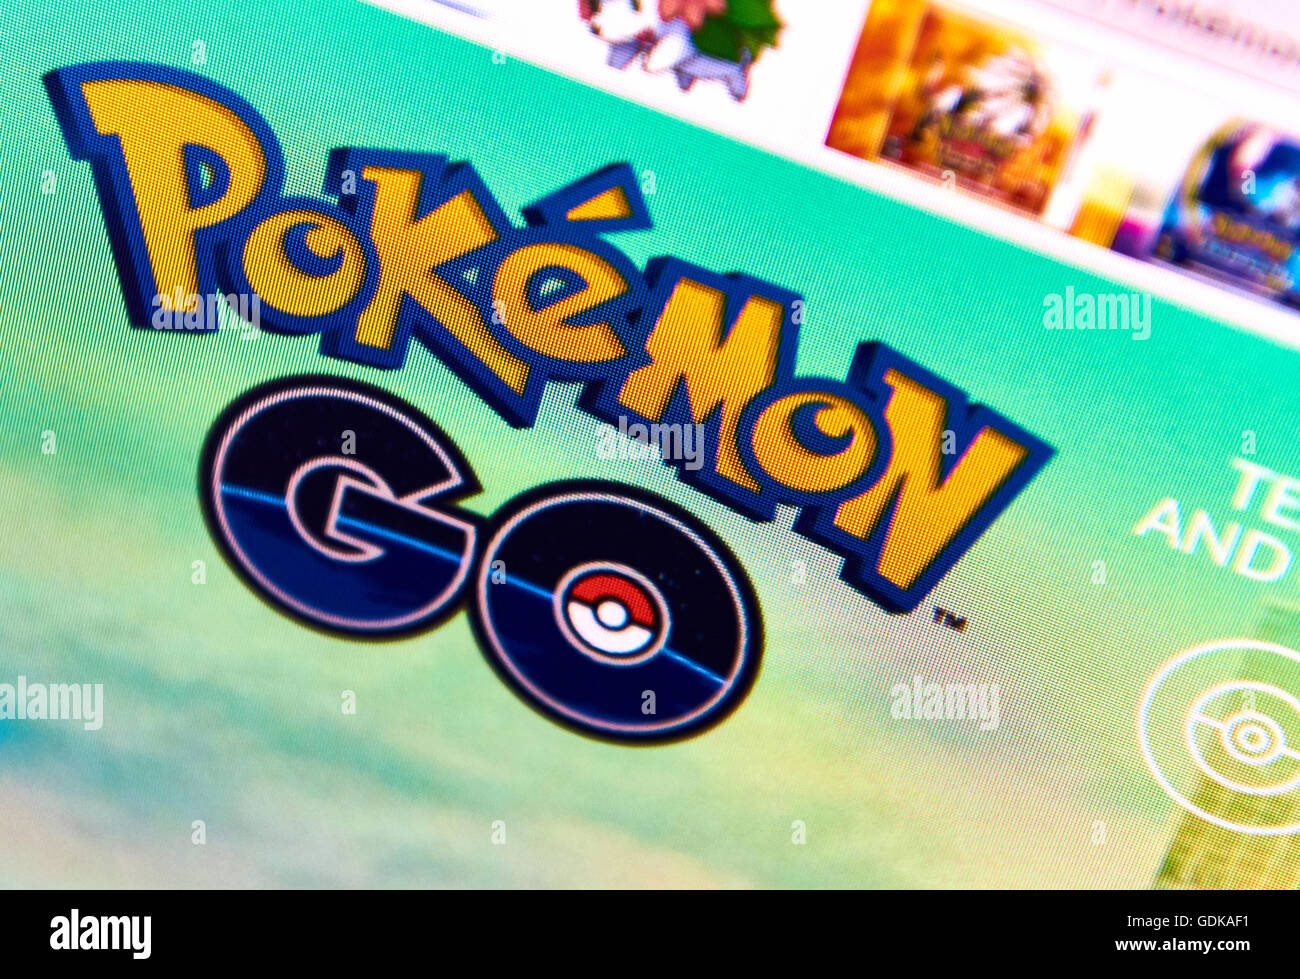 Pokemon Rendez-vous page d'accueil sur un écran de surveillance Banque D'Images